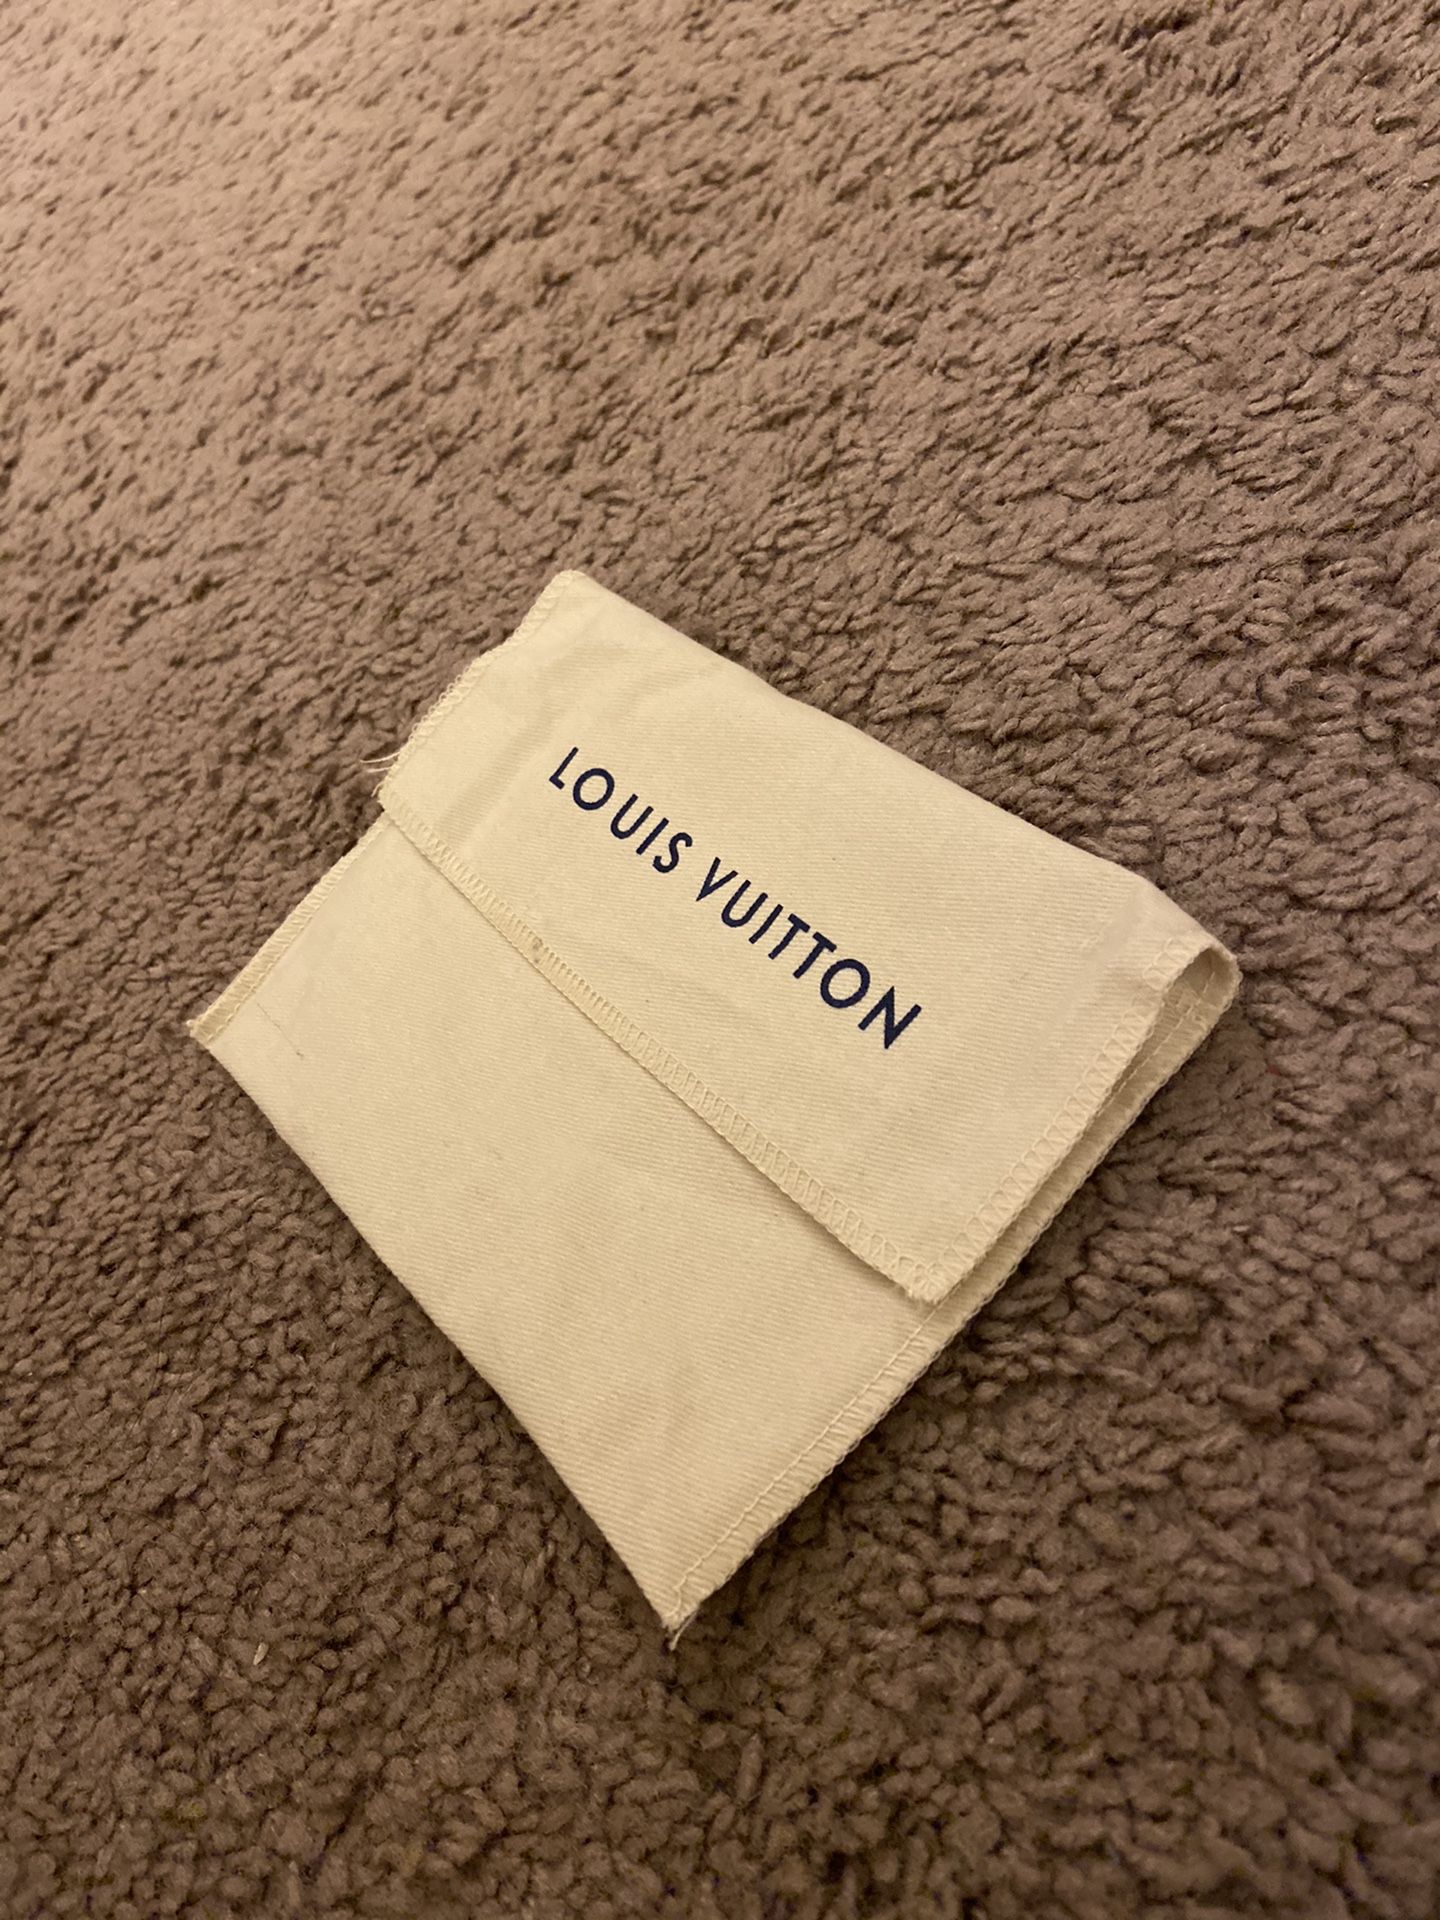 Louis Vuitton earring bracelet necklace dust bag wrap